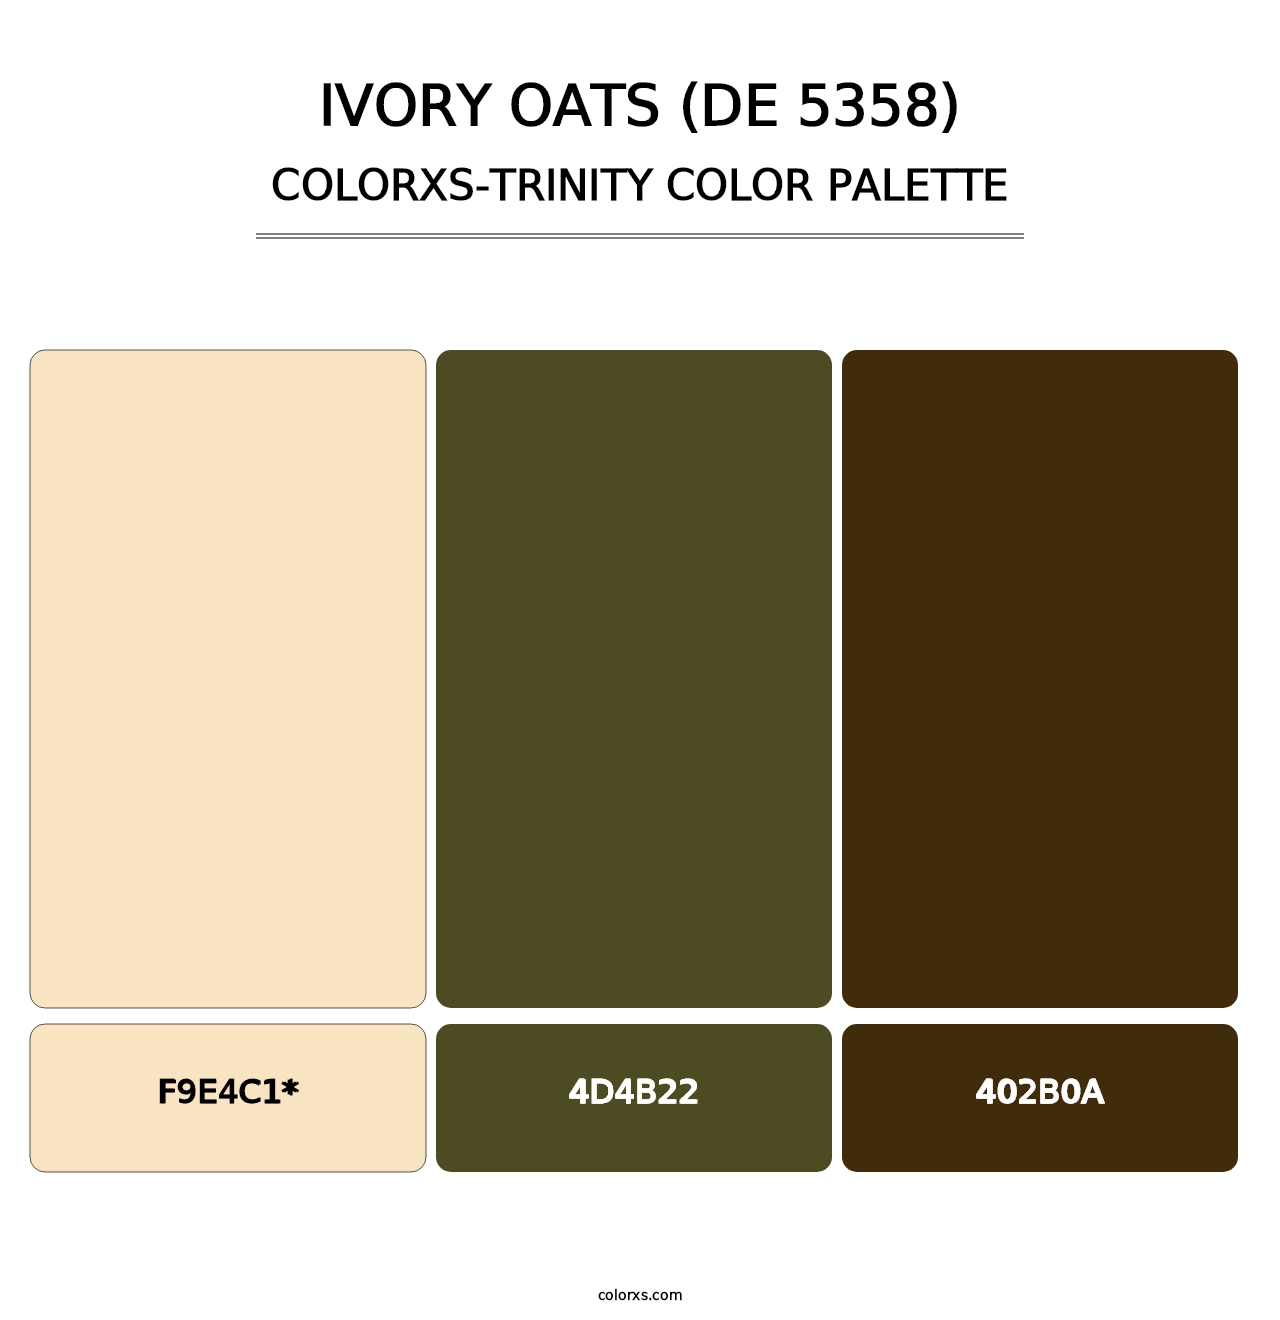 Ivory Oats (DE 5358) - Colorxs Trinity Palette